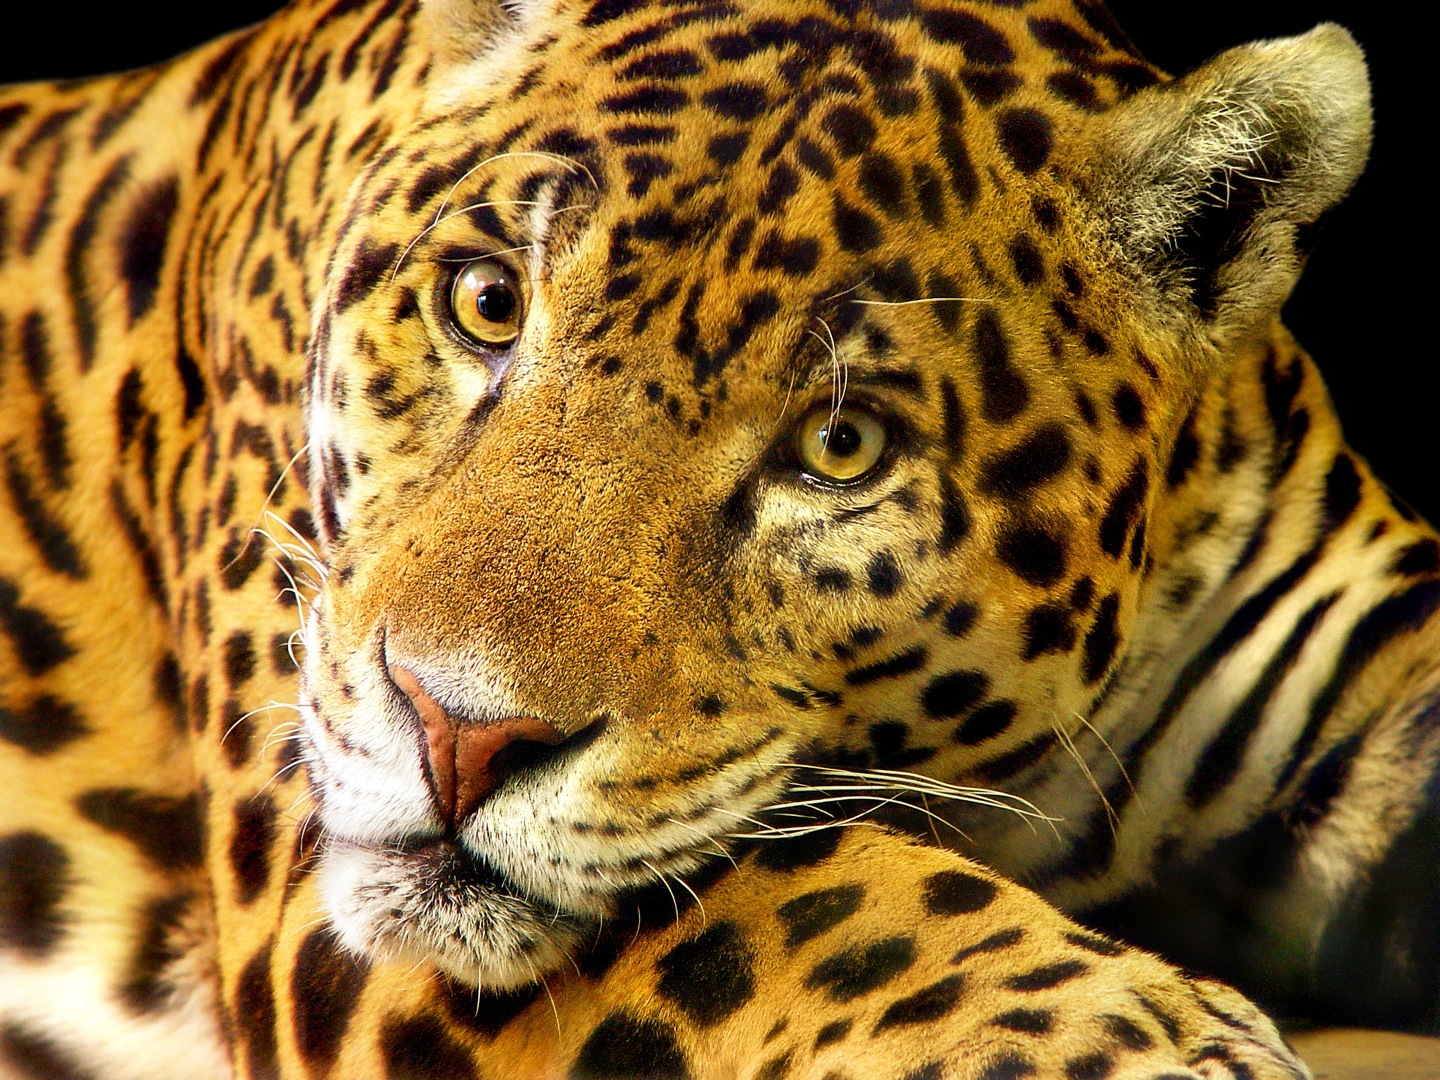 Le jaguar fait partie des espèces les plus emblématiques, menacées par la destruction de l'Amazonie. © Tambako the jaguar, Fotopedia, CC by-nd 2.0 